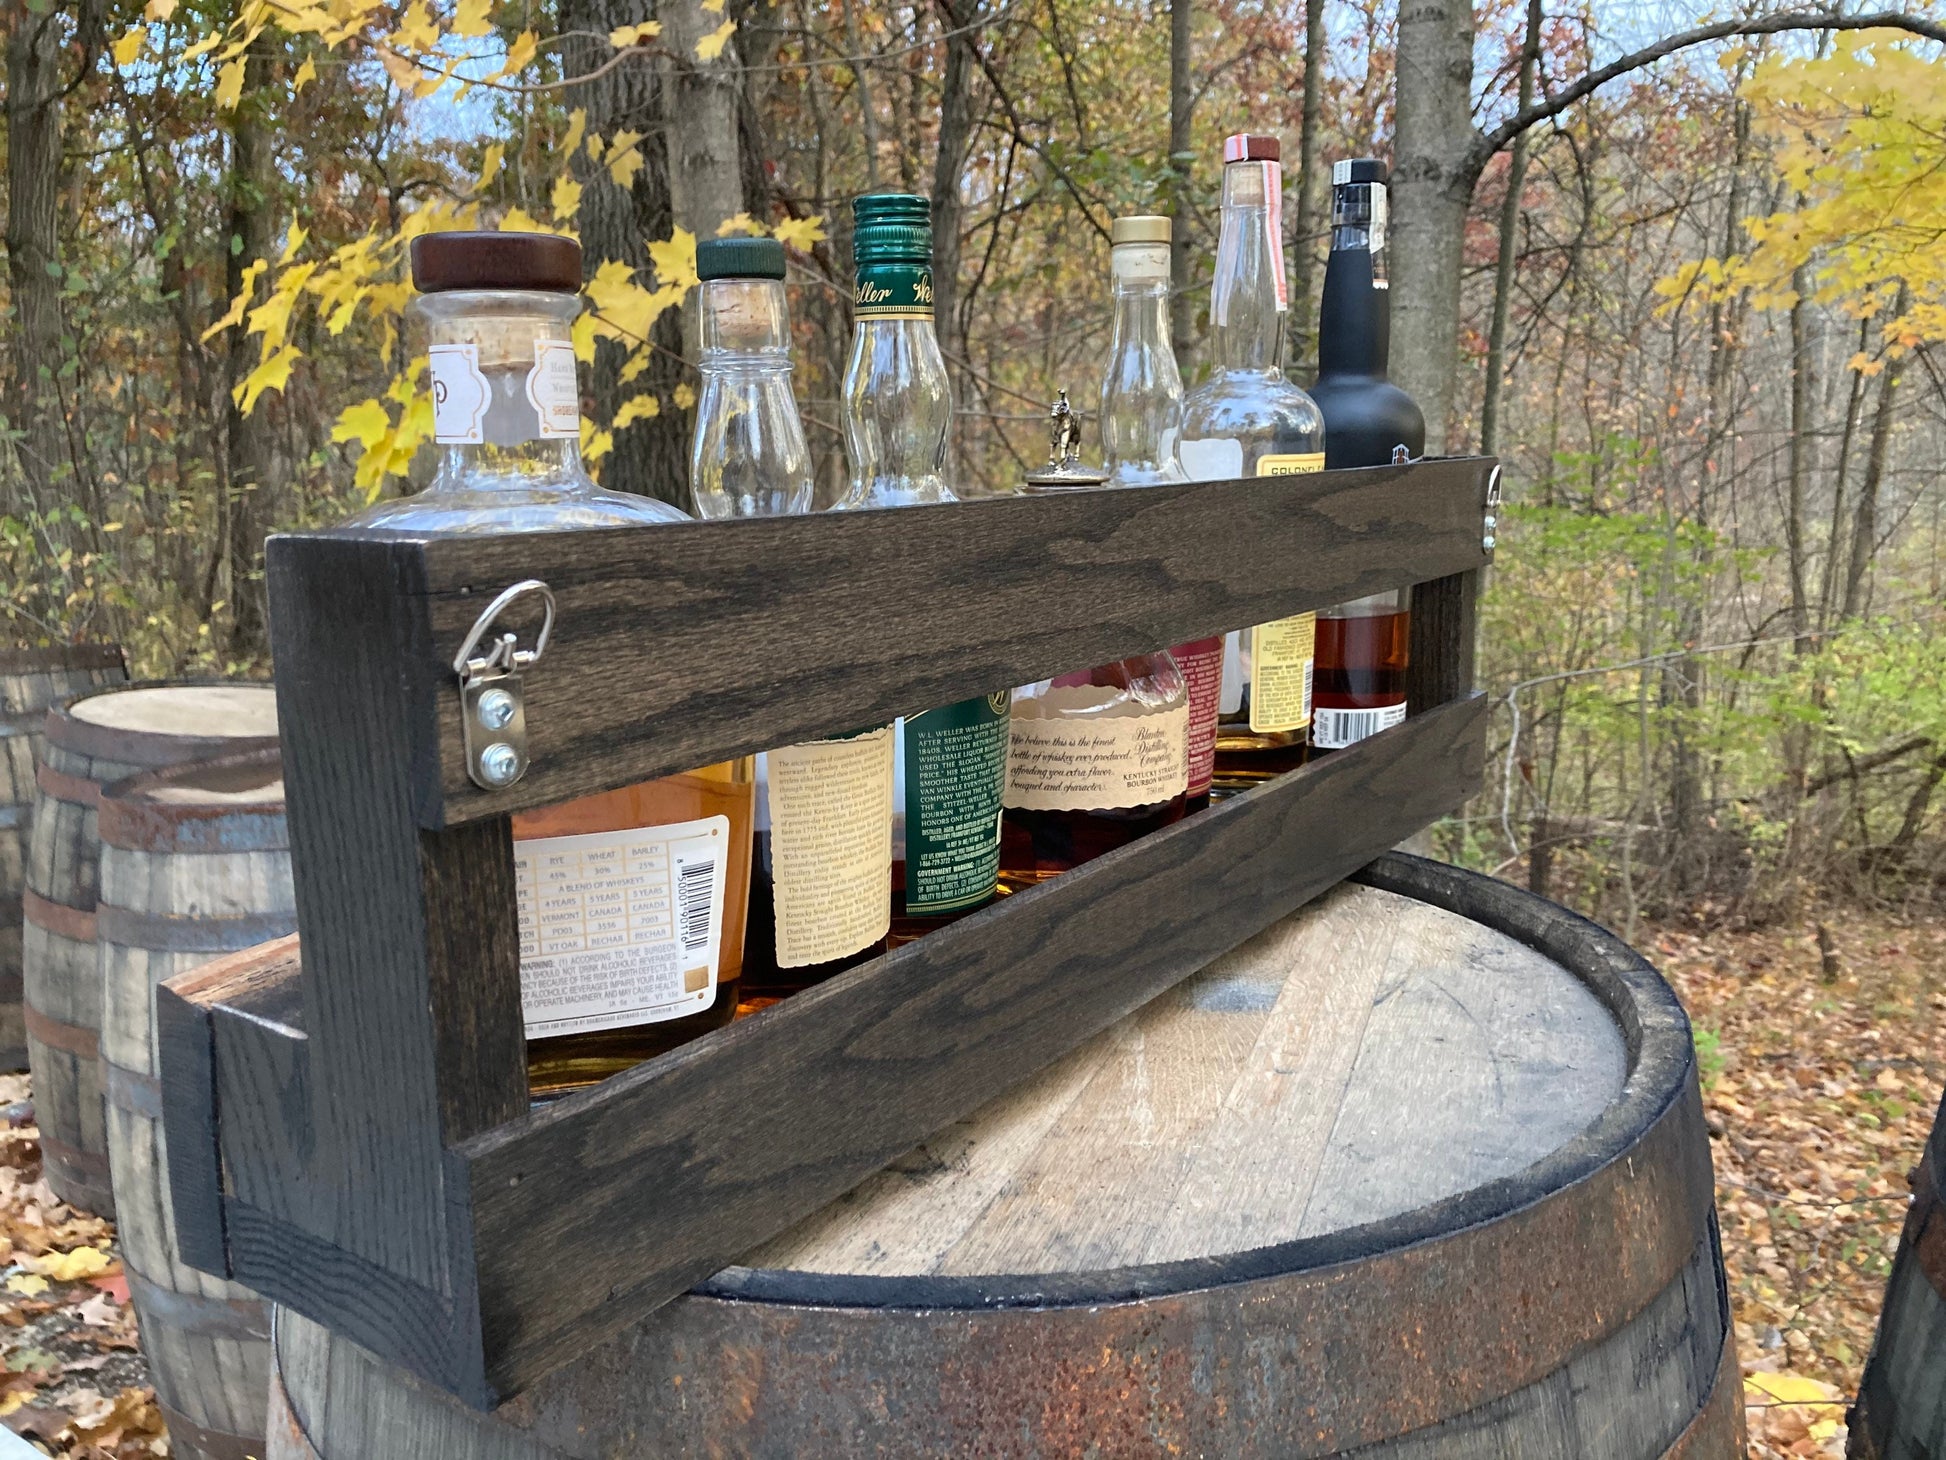 Bourbon/Whiskey Shelf-Exposed Hardware